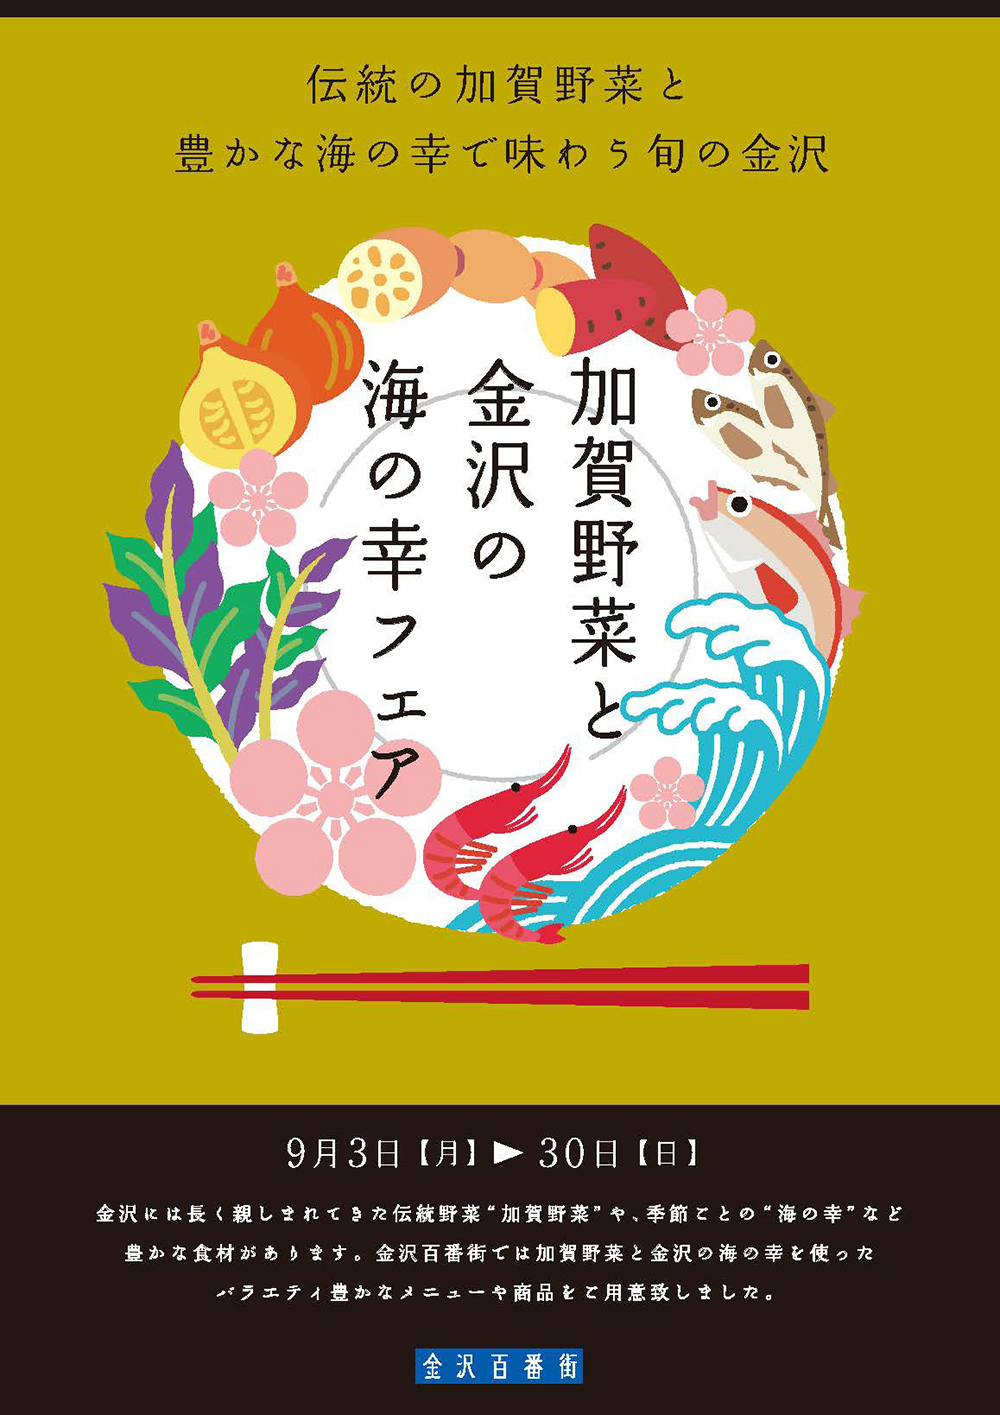 イベント 地元のおいしい農水産物が勢ぞろい 加賀野菜と金沢の海の幸フェア 金沢百番街で開催 いいじ金沢